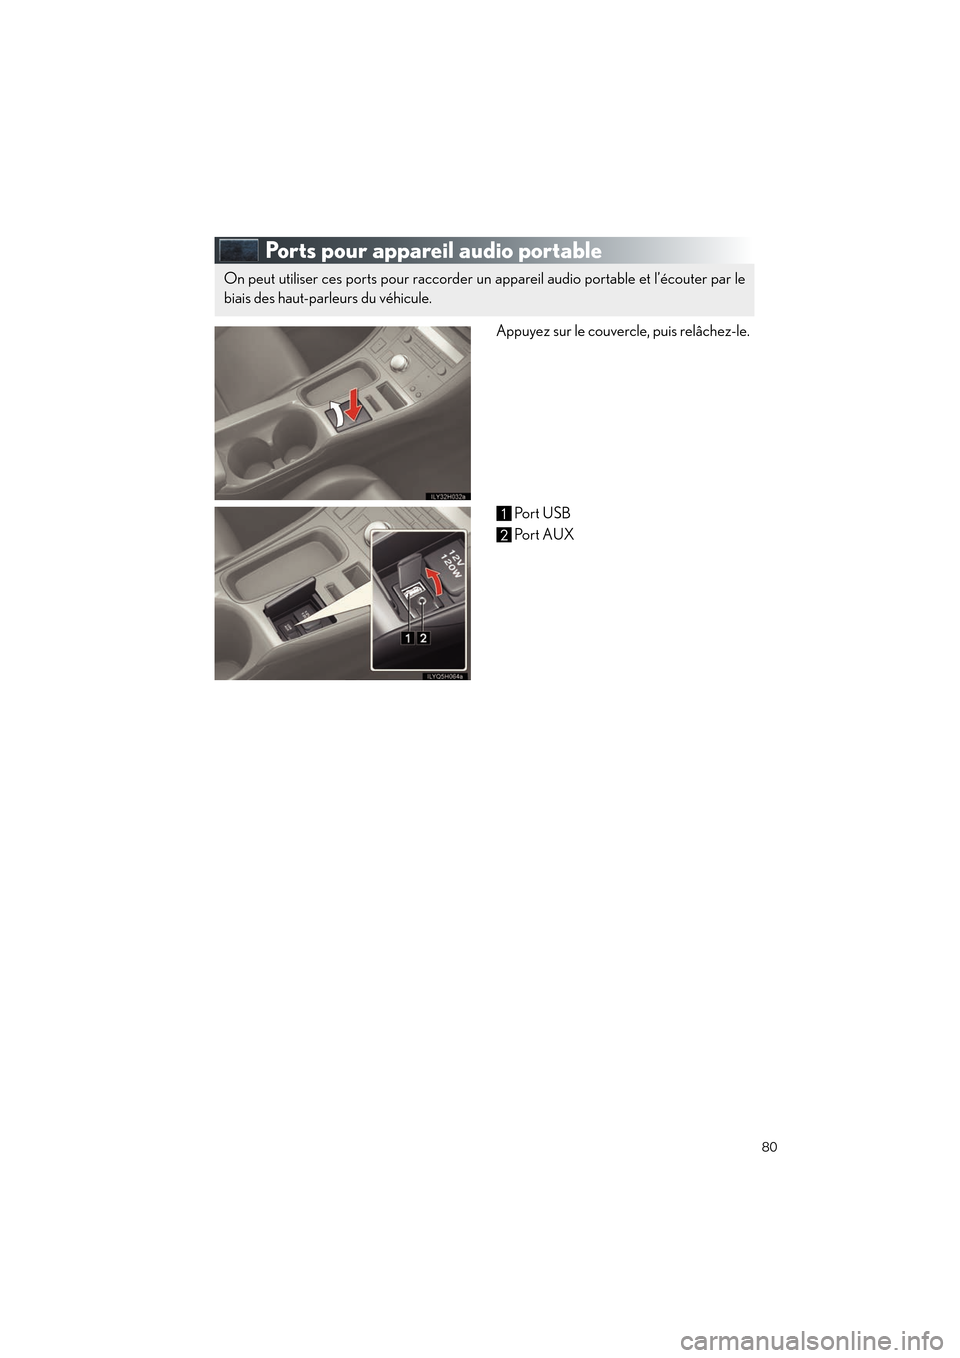 Lexus CT200h 2012  Guide rapide du manuel du propriétaire (in French) 80
CT200h_QG_D (OM76052D)
Ports pour appareil audio portable
Appuyez sur le couvercle, puis relâchez-le.Port USB
Po r t  AUX
On peut utiliser ces ports pour raccorder un  appareil audio portable et l